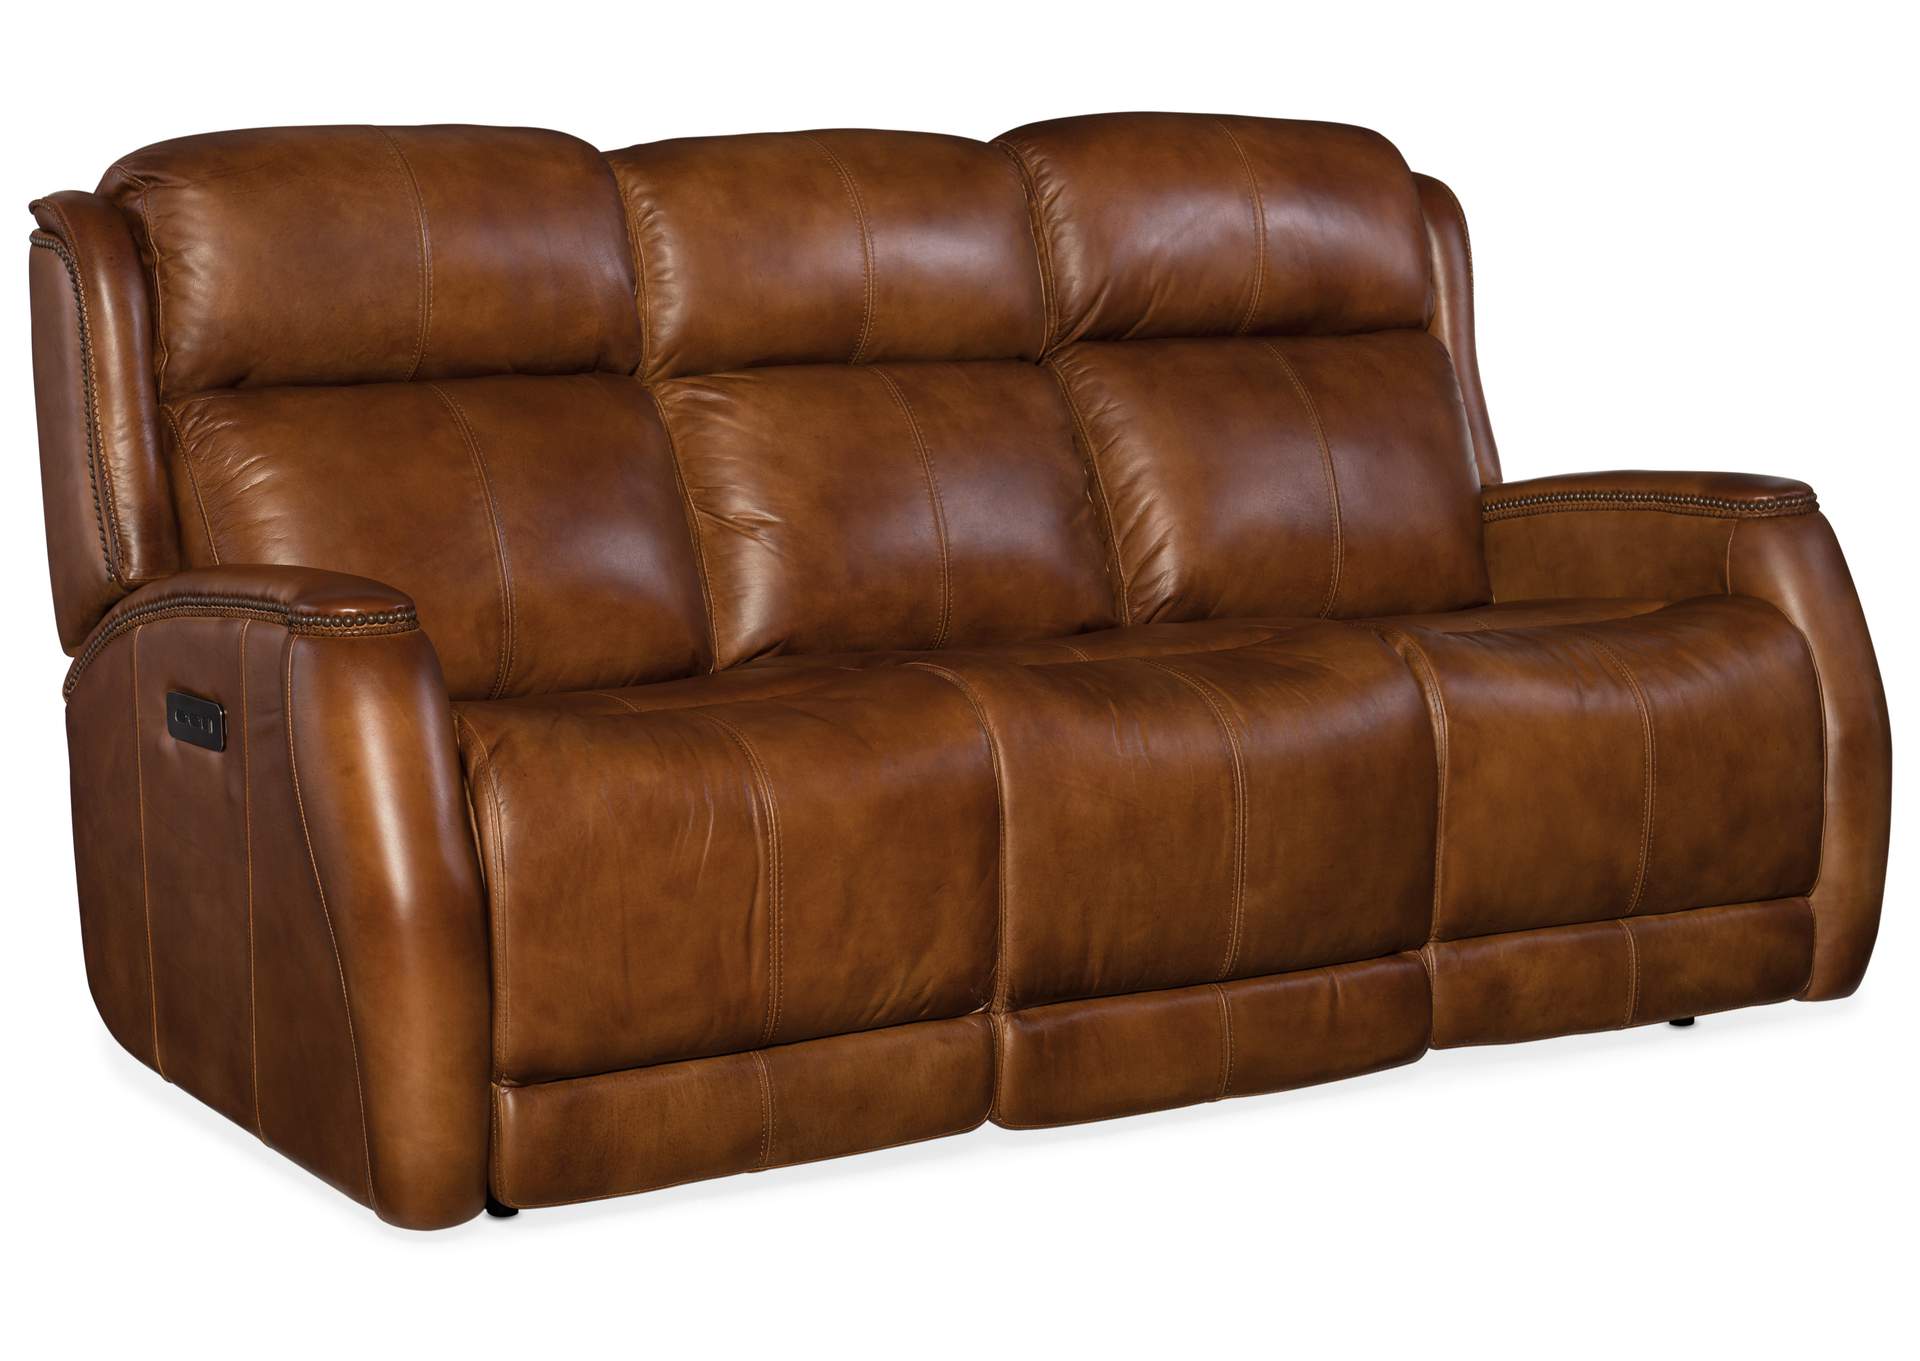 Emerson Power Recliner Sofa w/ Power Headrest,Hooker Furniture